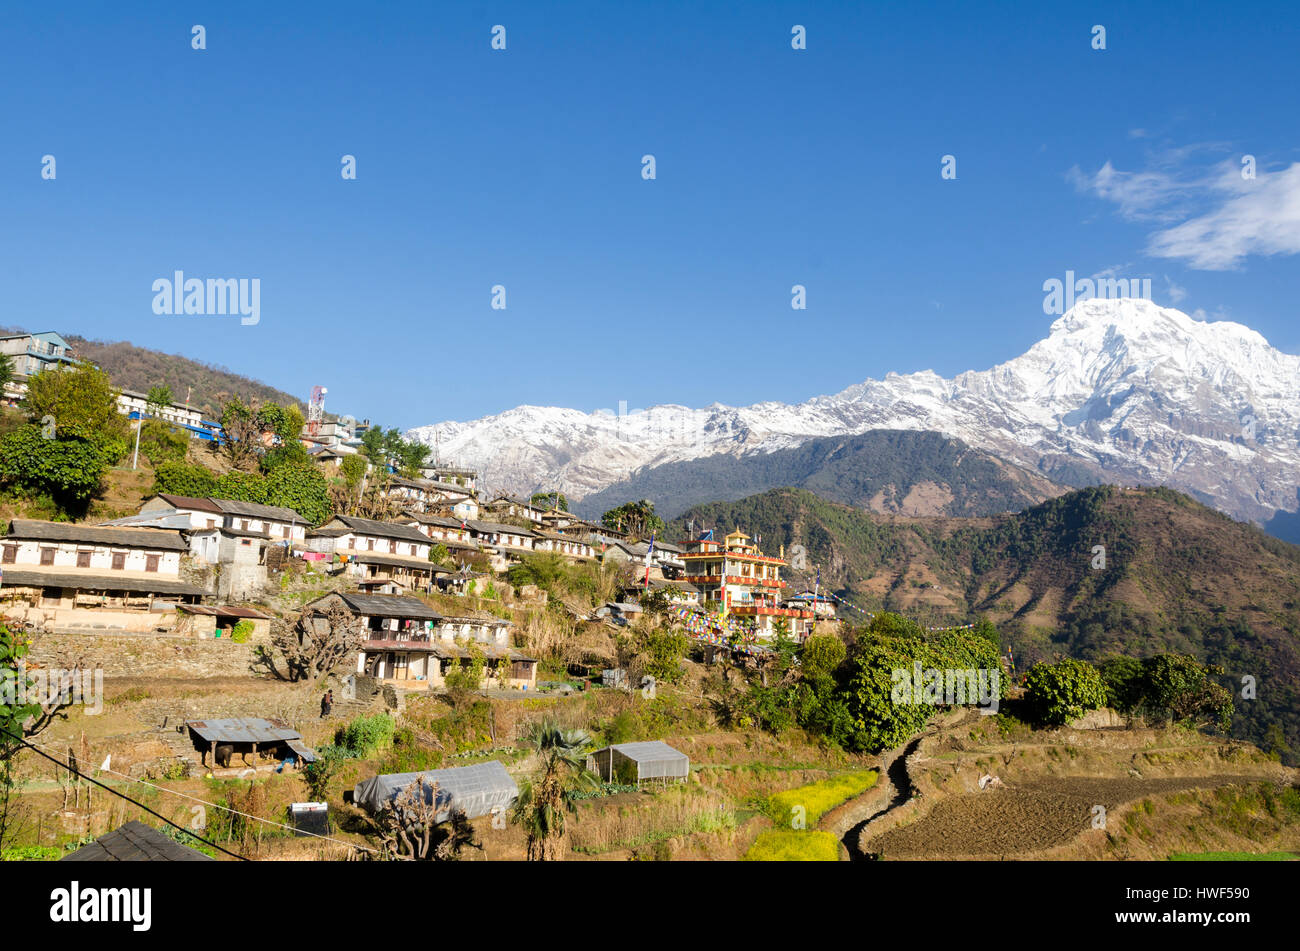 Foto dal viaggio intorno allo splendido villaggio di Ghandruk del Nepal vicino a Pokhara. Questo villaggio è un tradizionale villaggio Gurung. Foto Stock